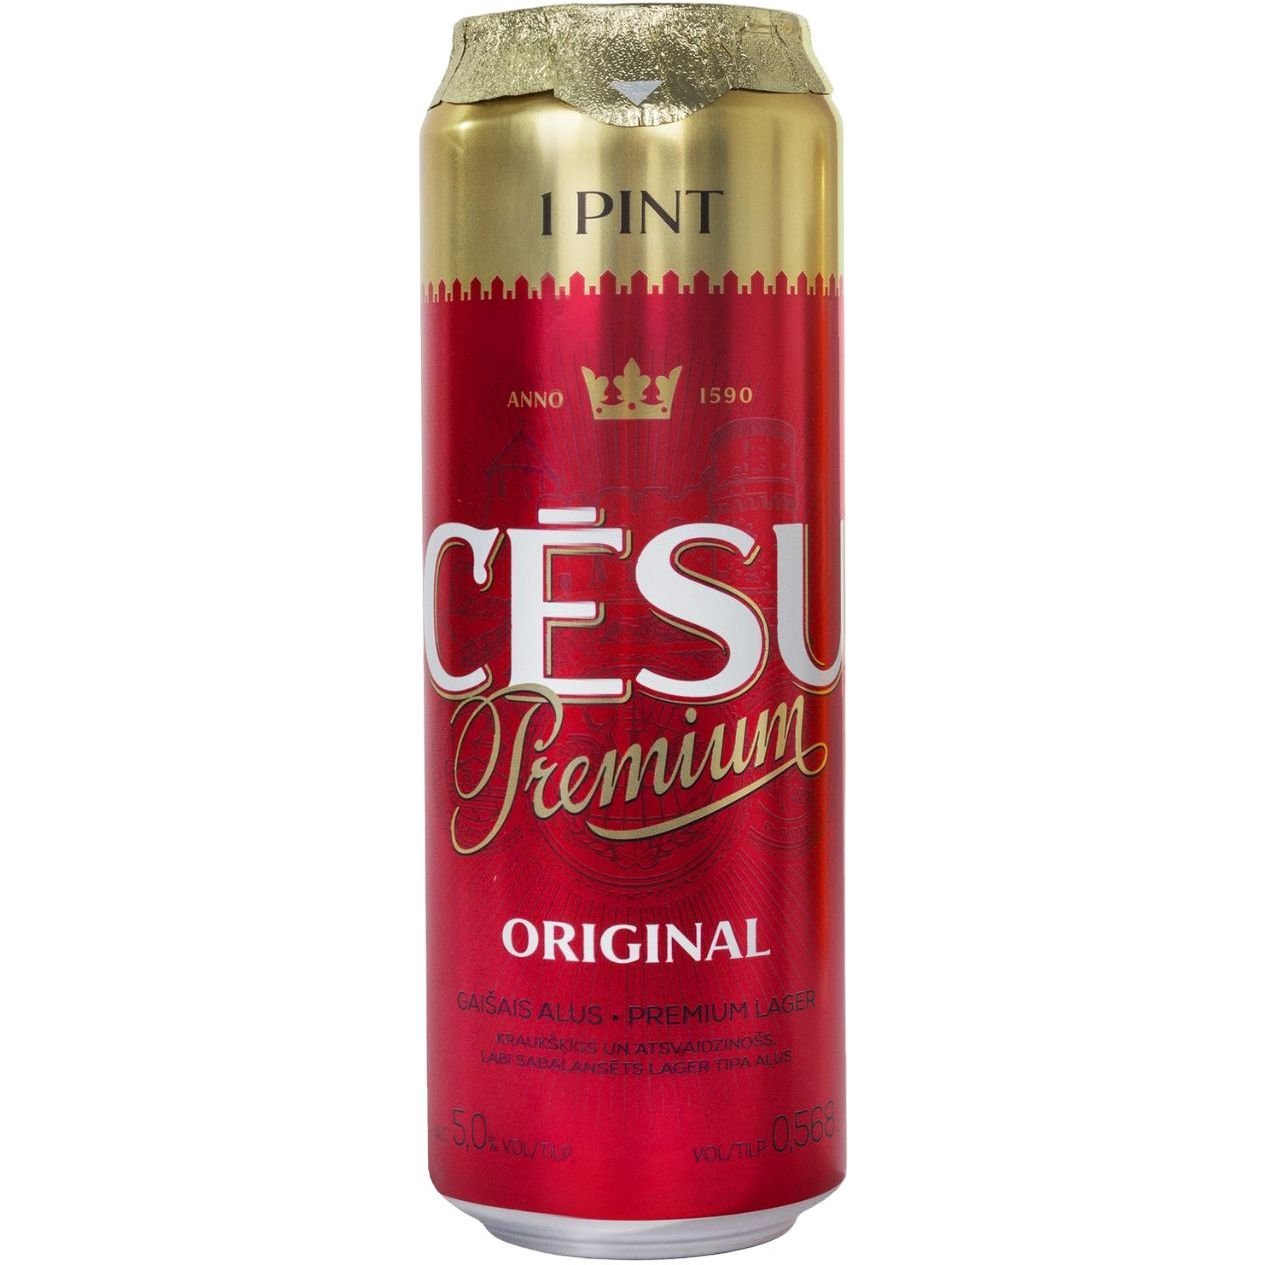 Пиво Cesu Premium Original, светлое, фильтрованное, 5% ж/б, 0,568 л - фото 1